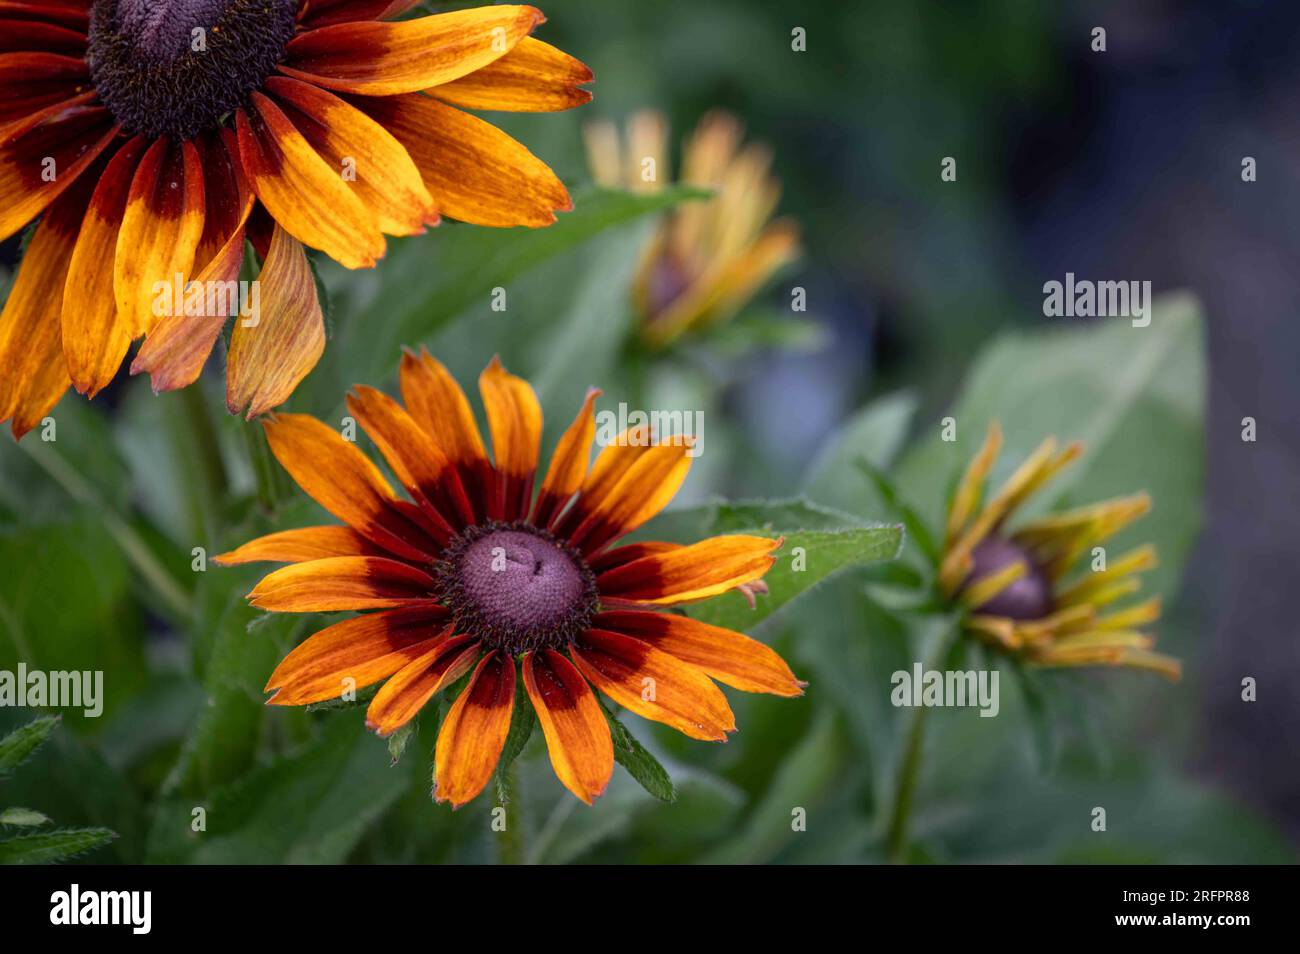 Gros plan de la tête de fleur Gloriosa Daisy avec des pétales orange jaune vif et brun rouge, fond vert de jardin extérieur nature, mise au point sélective Banque D'Images